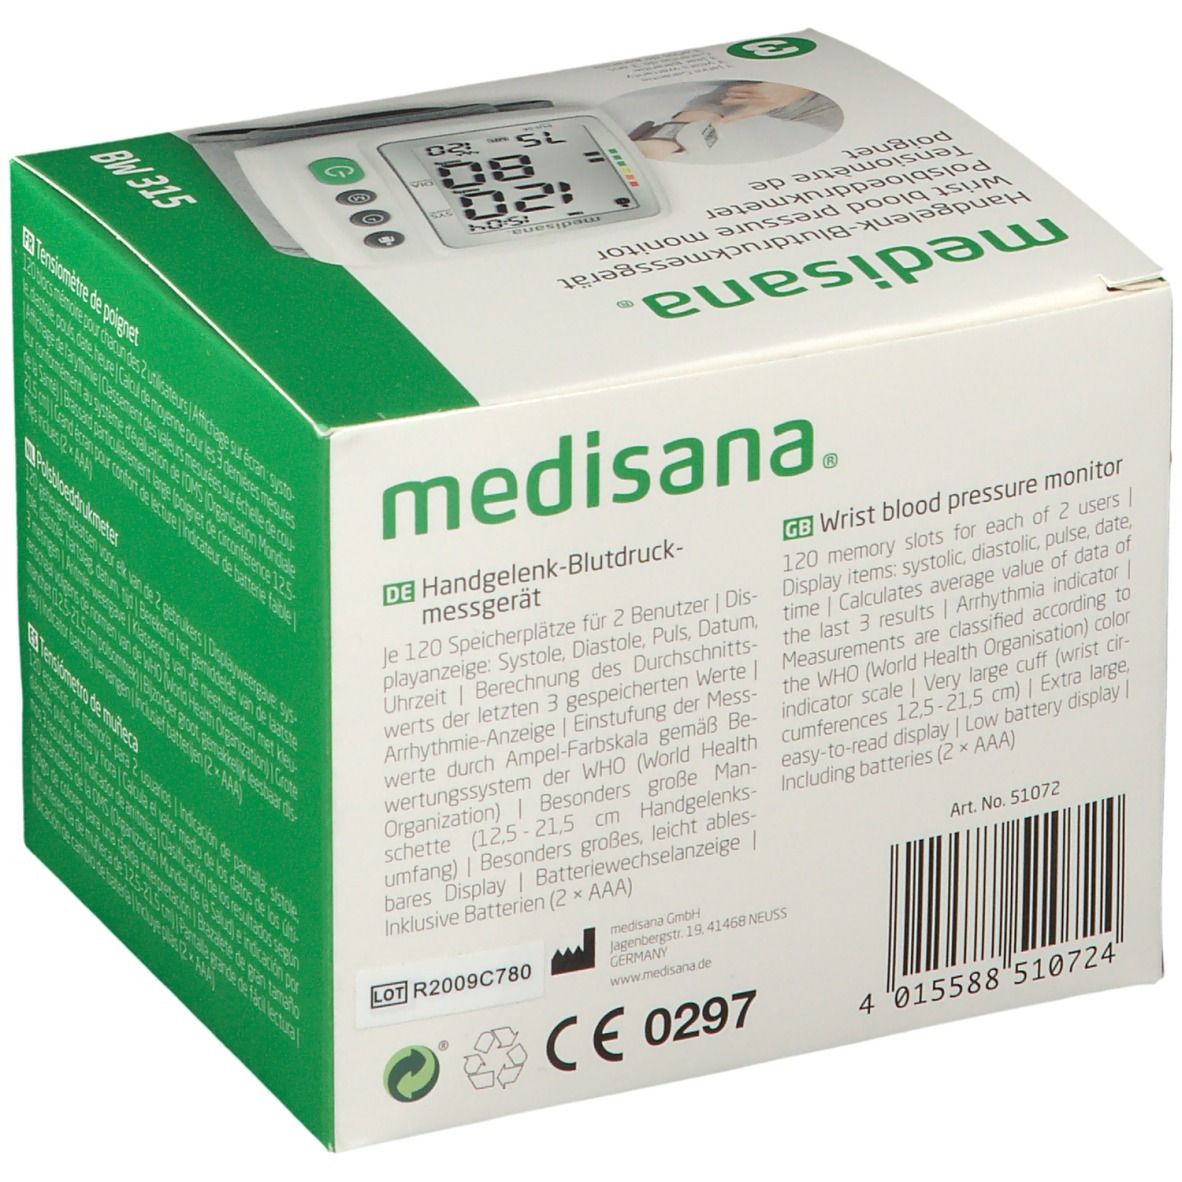 Medisana BW St Handgelenk-Blutdruckmessgerät 315 1